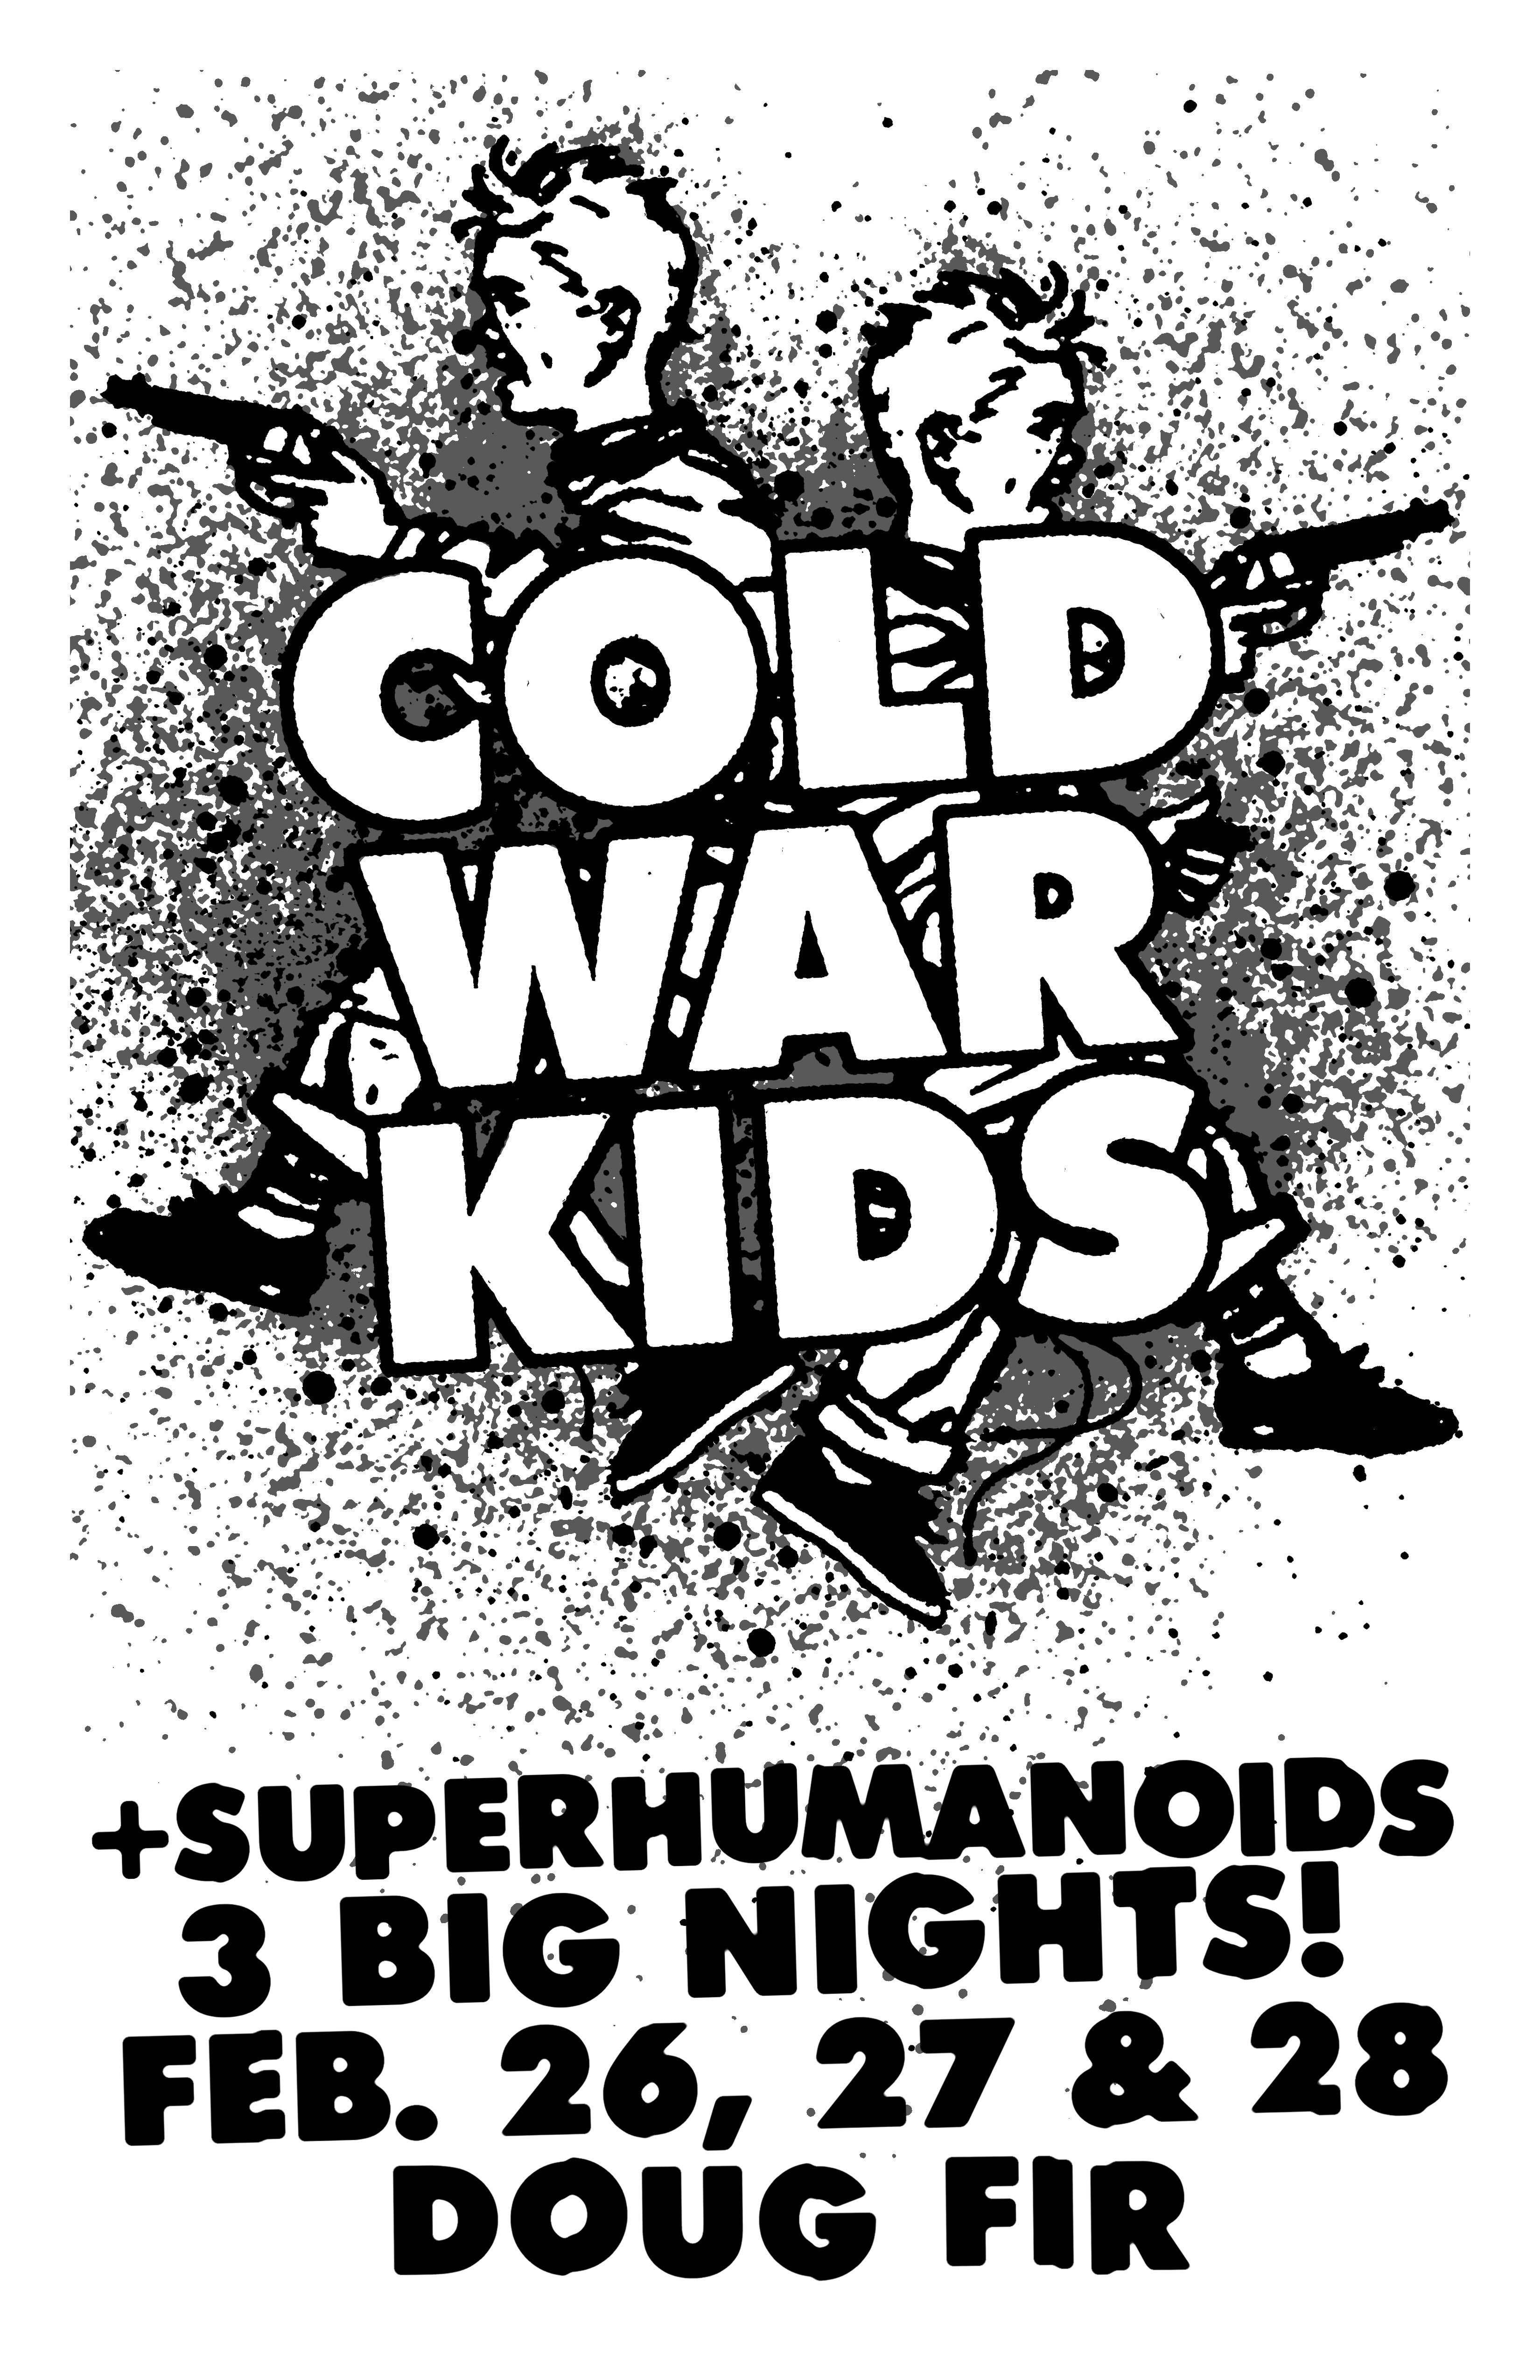 MXP-141.39 Cold War Kids 2012 Doug Fir  Feb 28 Concert Poster